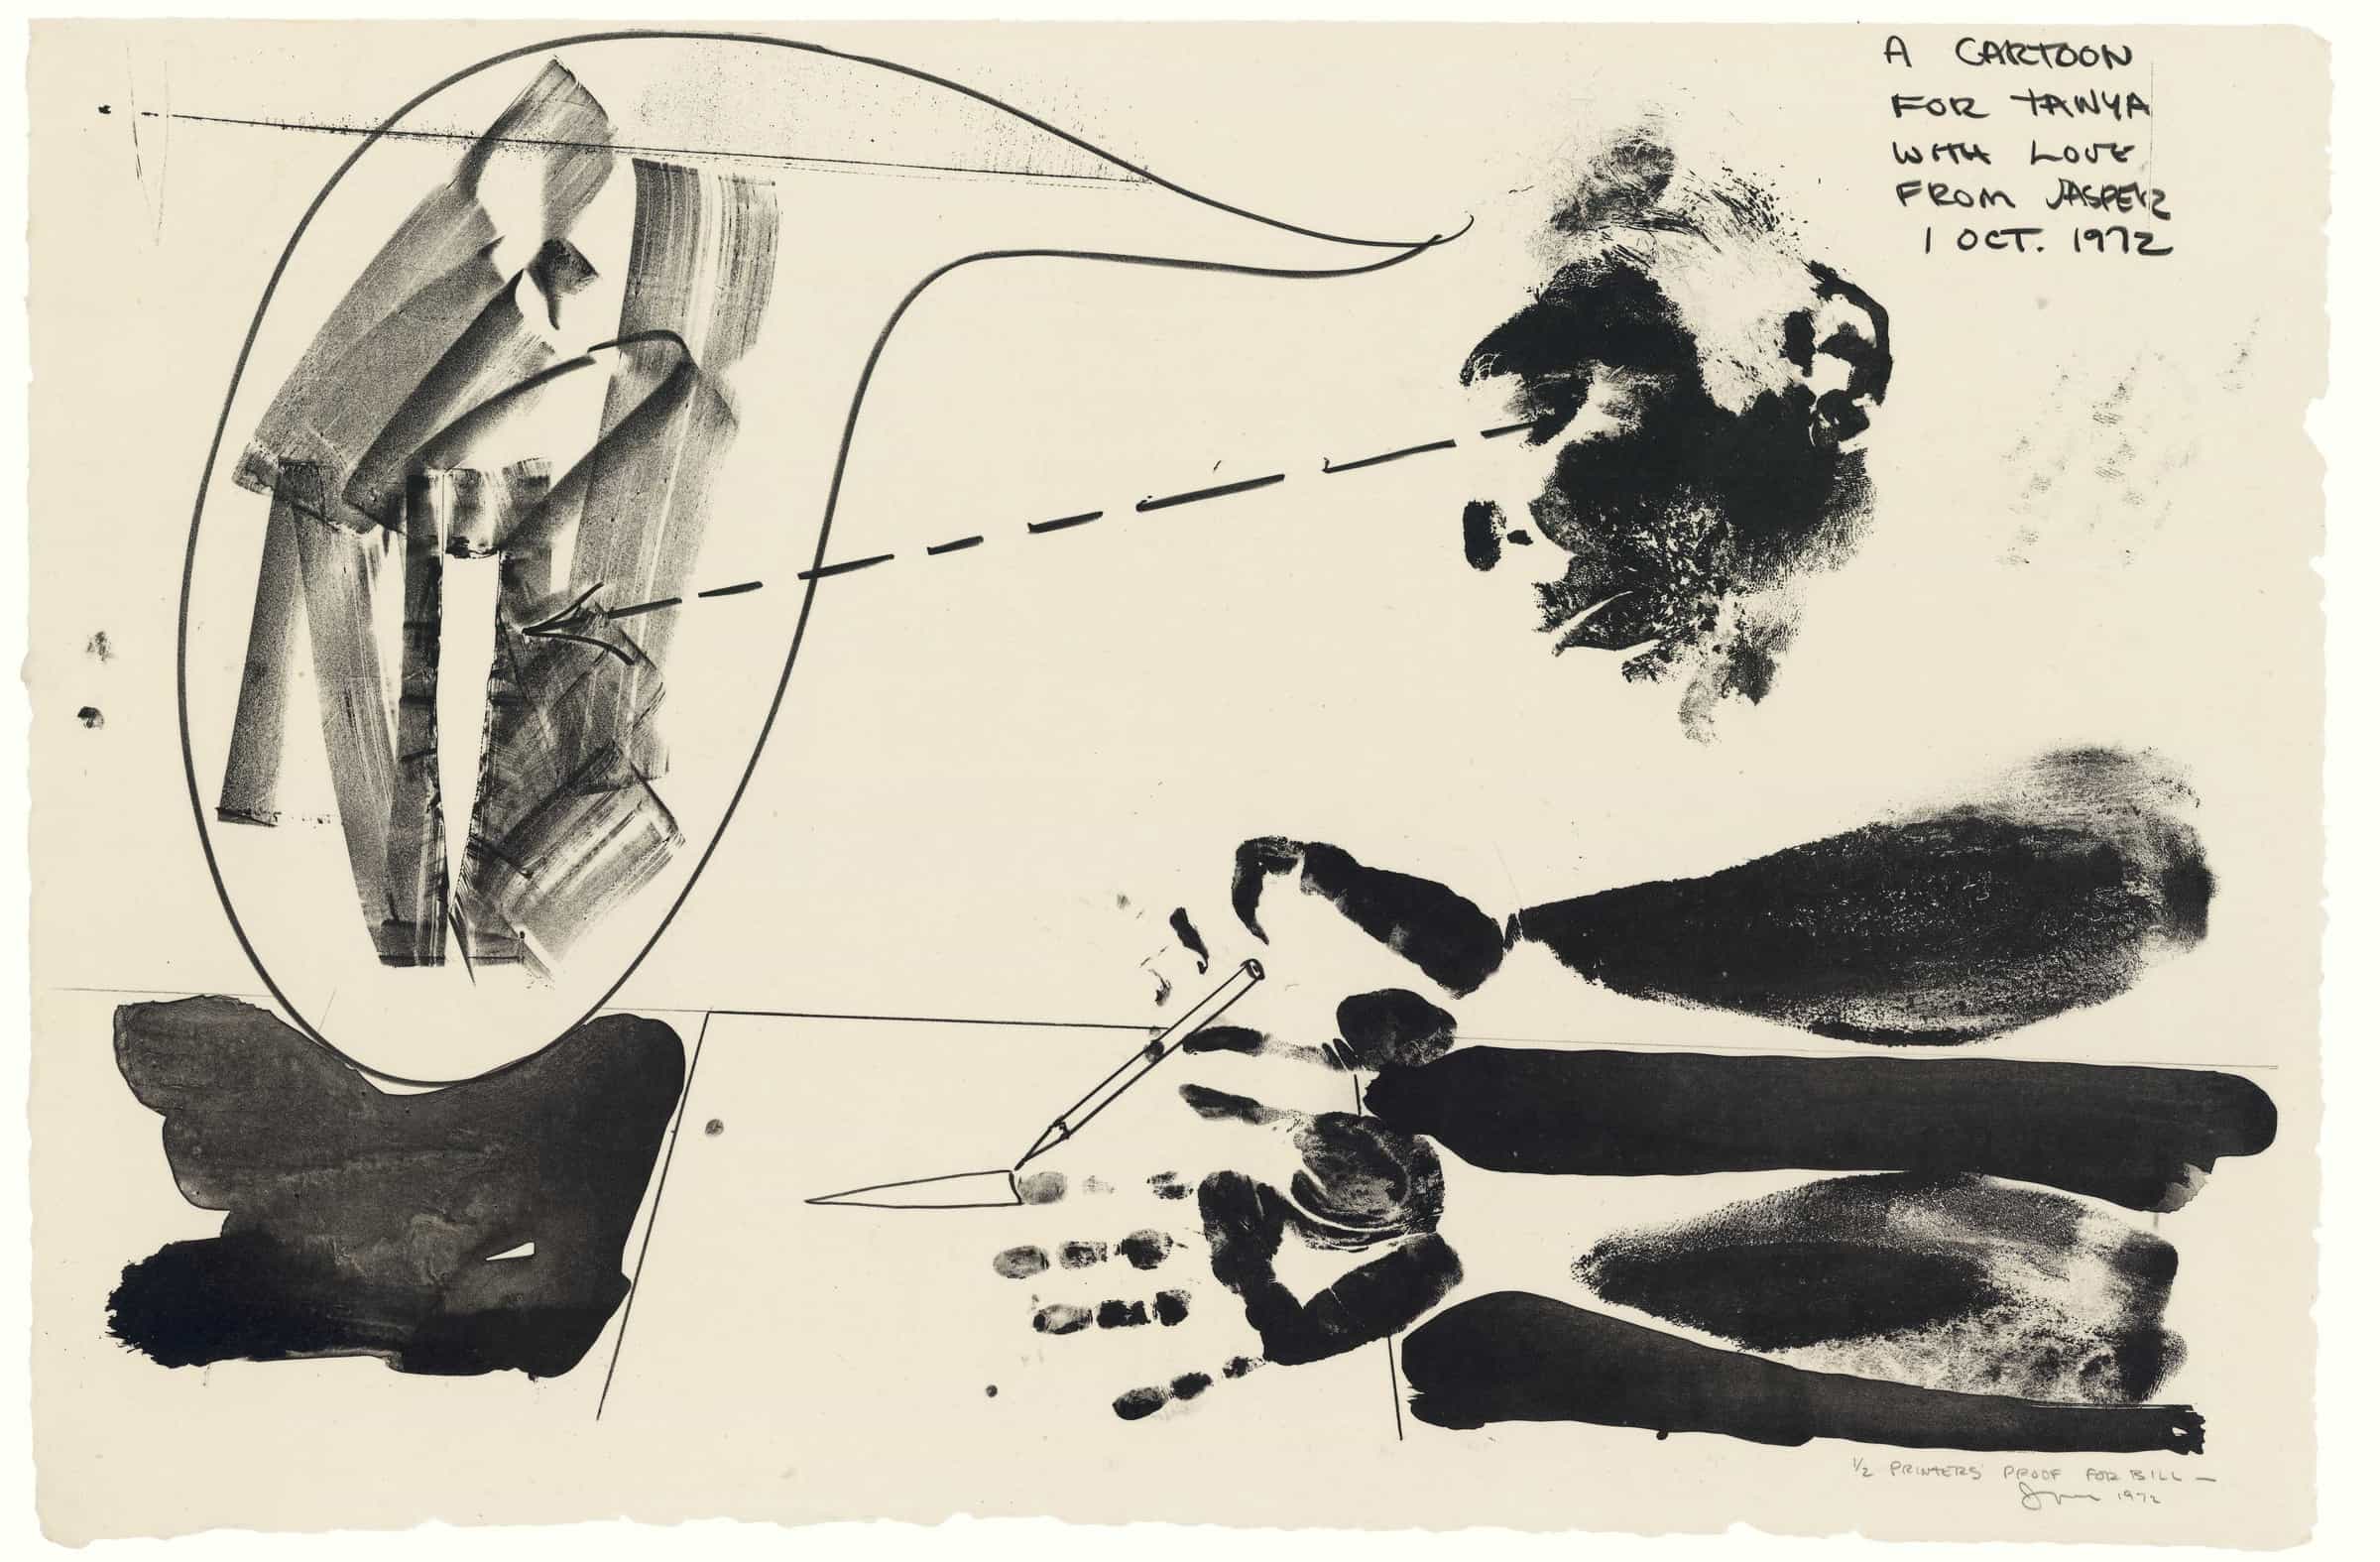 Jasper Johns, A Cartoon for Tanya, 1972